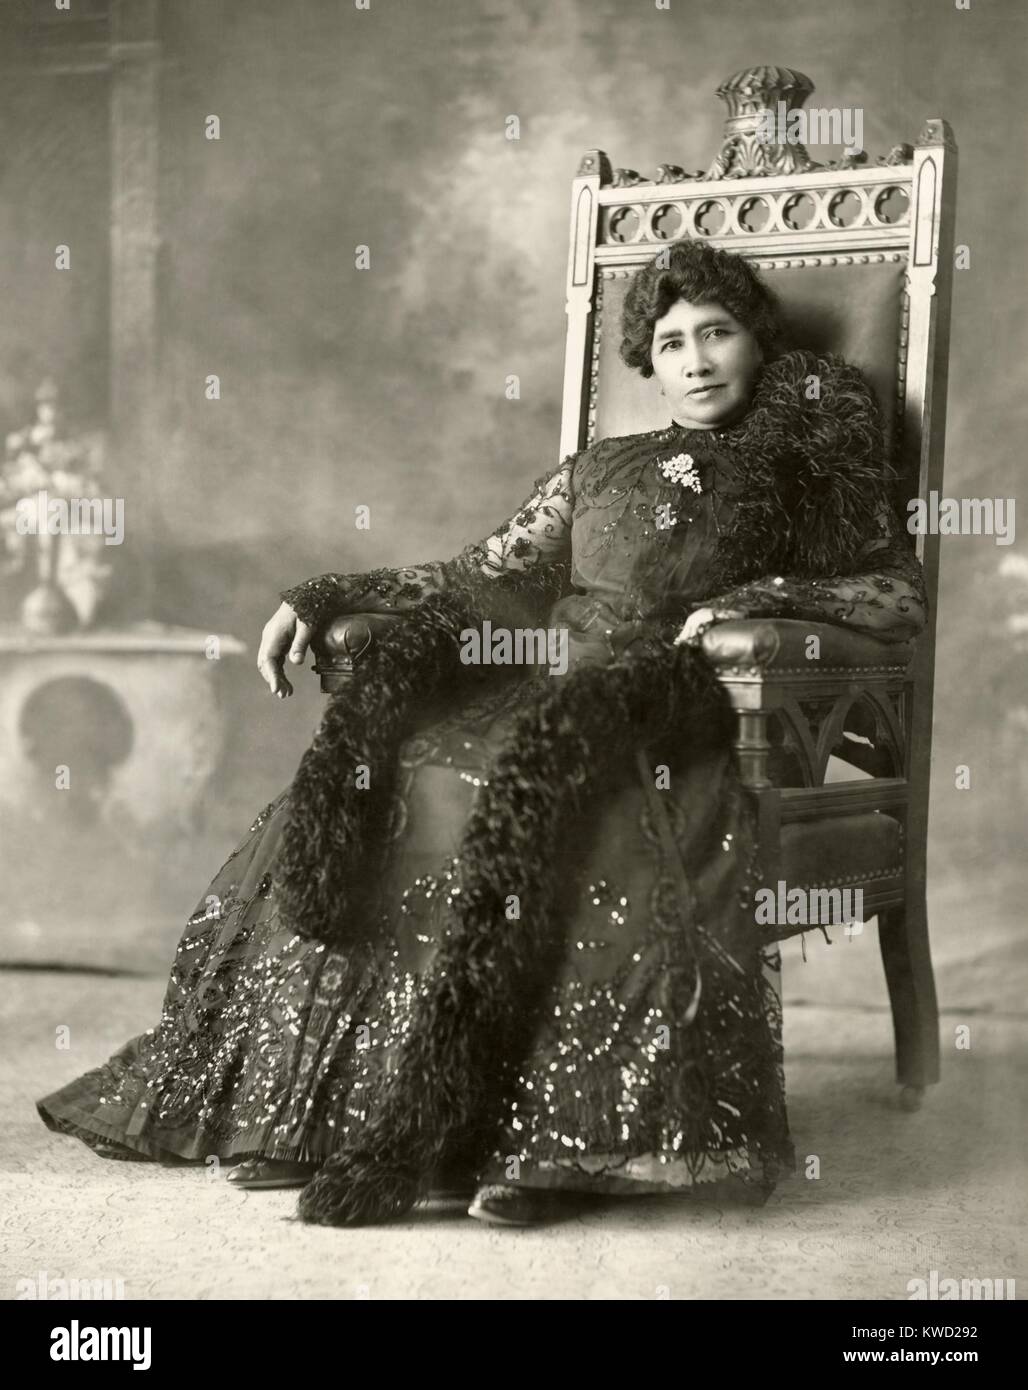 La principessa Liliuokalani seduto in una sedia coronato che ha segnato il suo posto nel palazzo sala da pranzo, c. 1880 (BSLOC 2017 20 58) Foto Stock